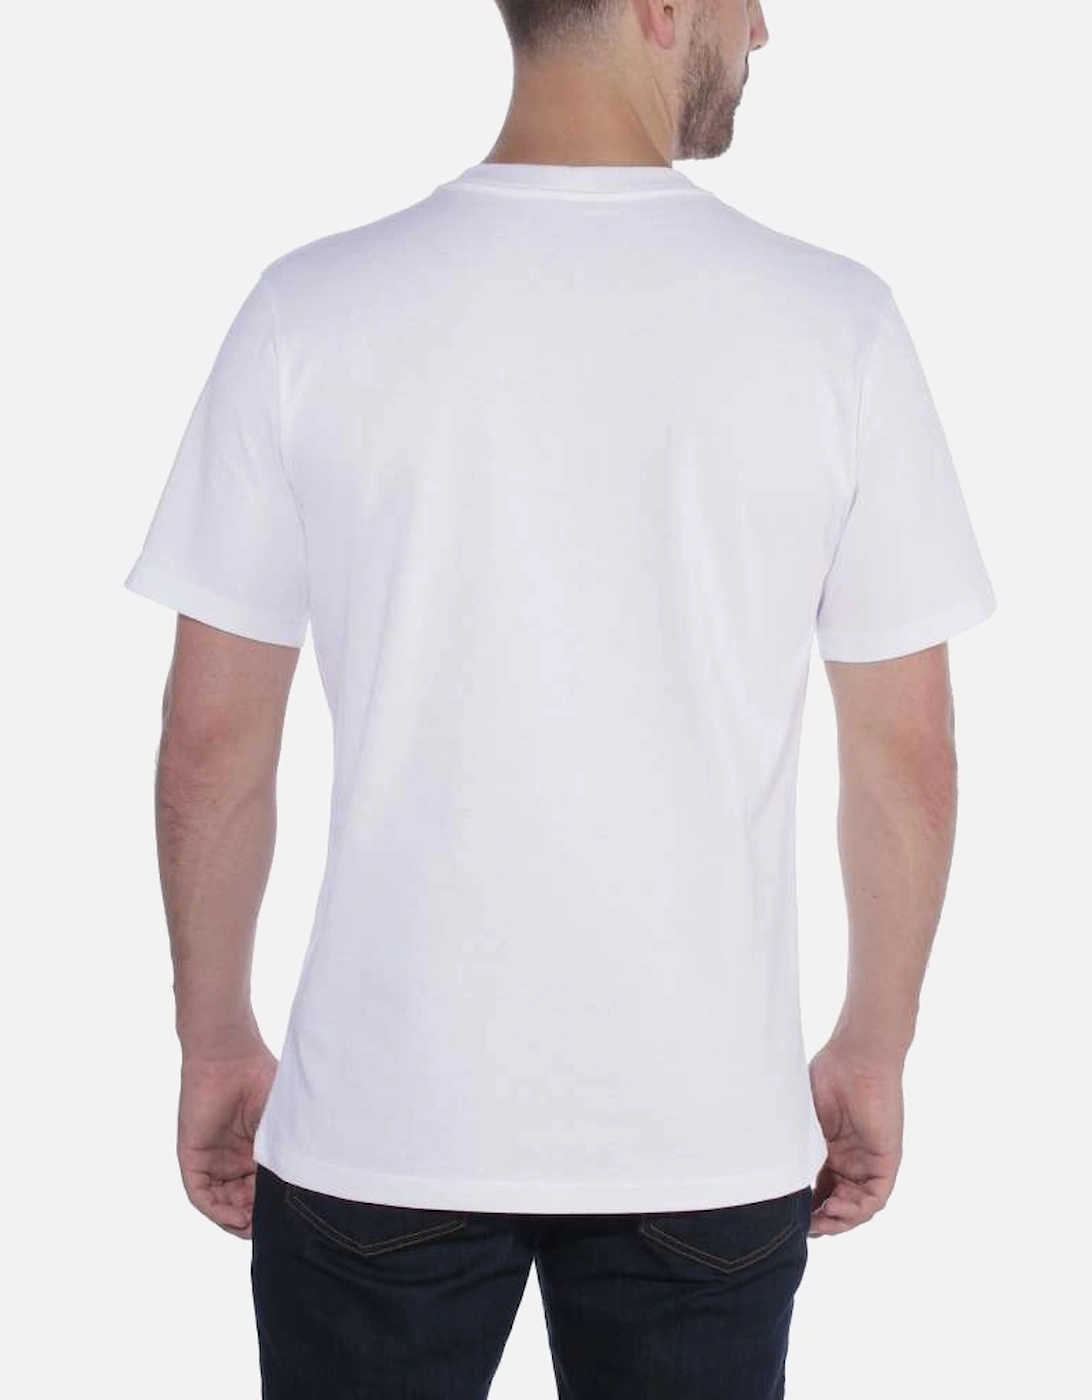 Carhartt Mens Non-Pocket Heavyweight Relaxed Fit T Shirt